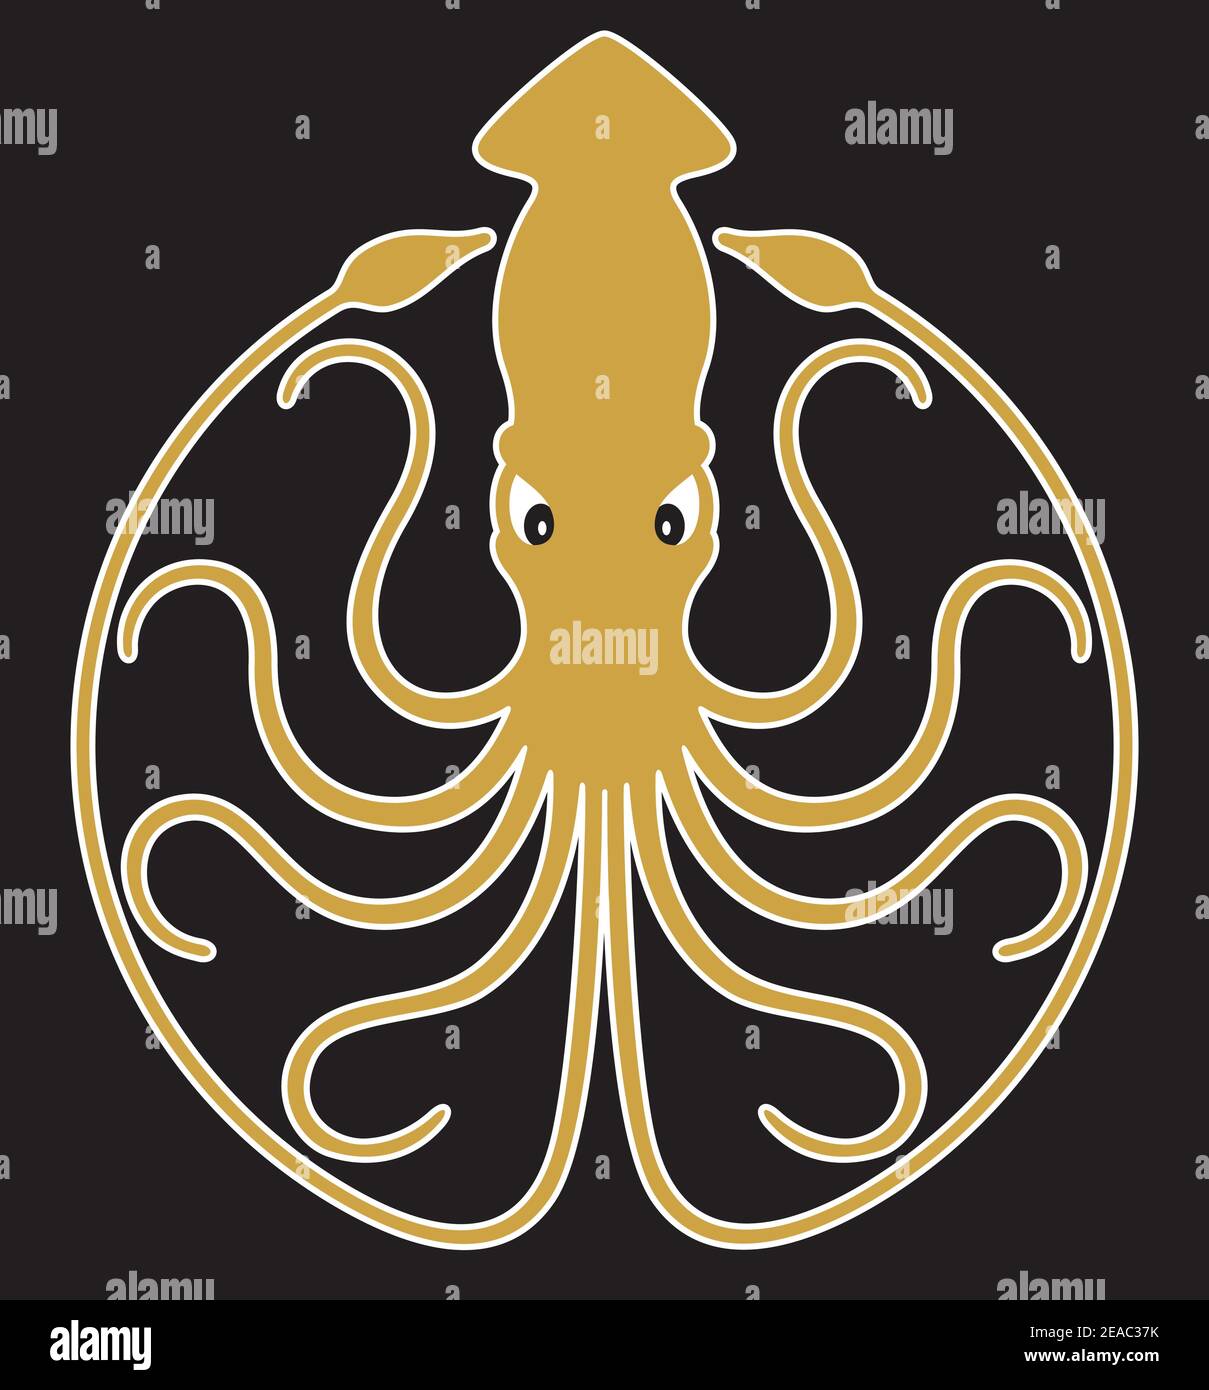 Emblème, logo ou emblème Squid géant. Illustration vectorielle avec 10 tentacules de curling créant un motif de cercle. Illustration de Vecteur